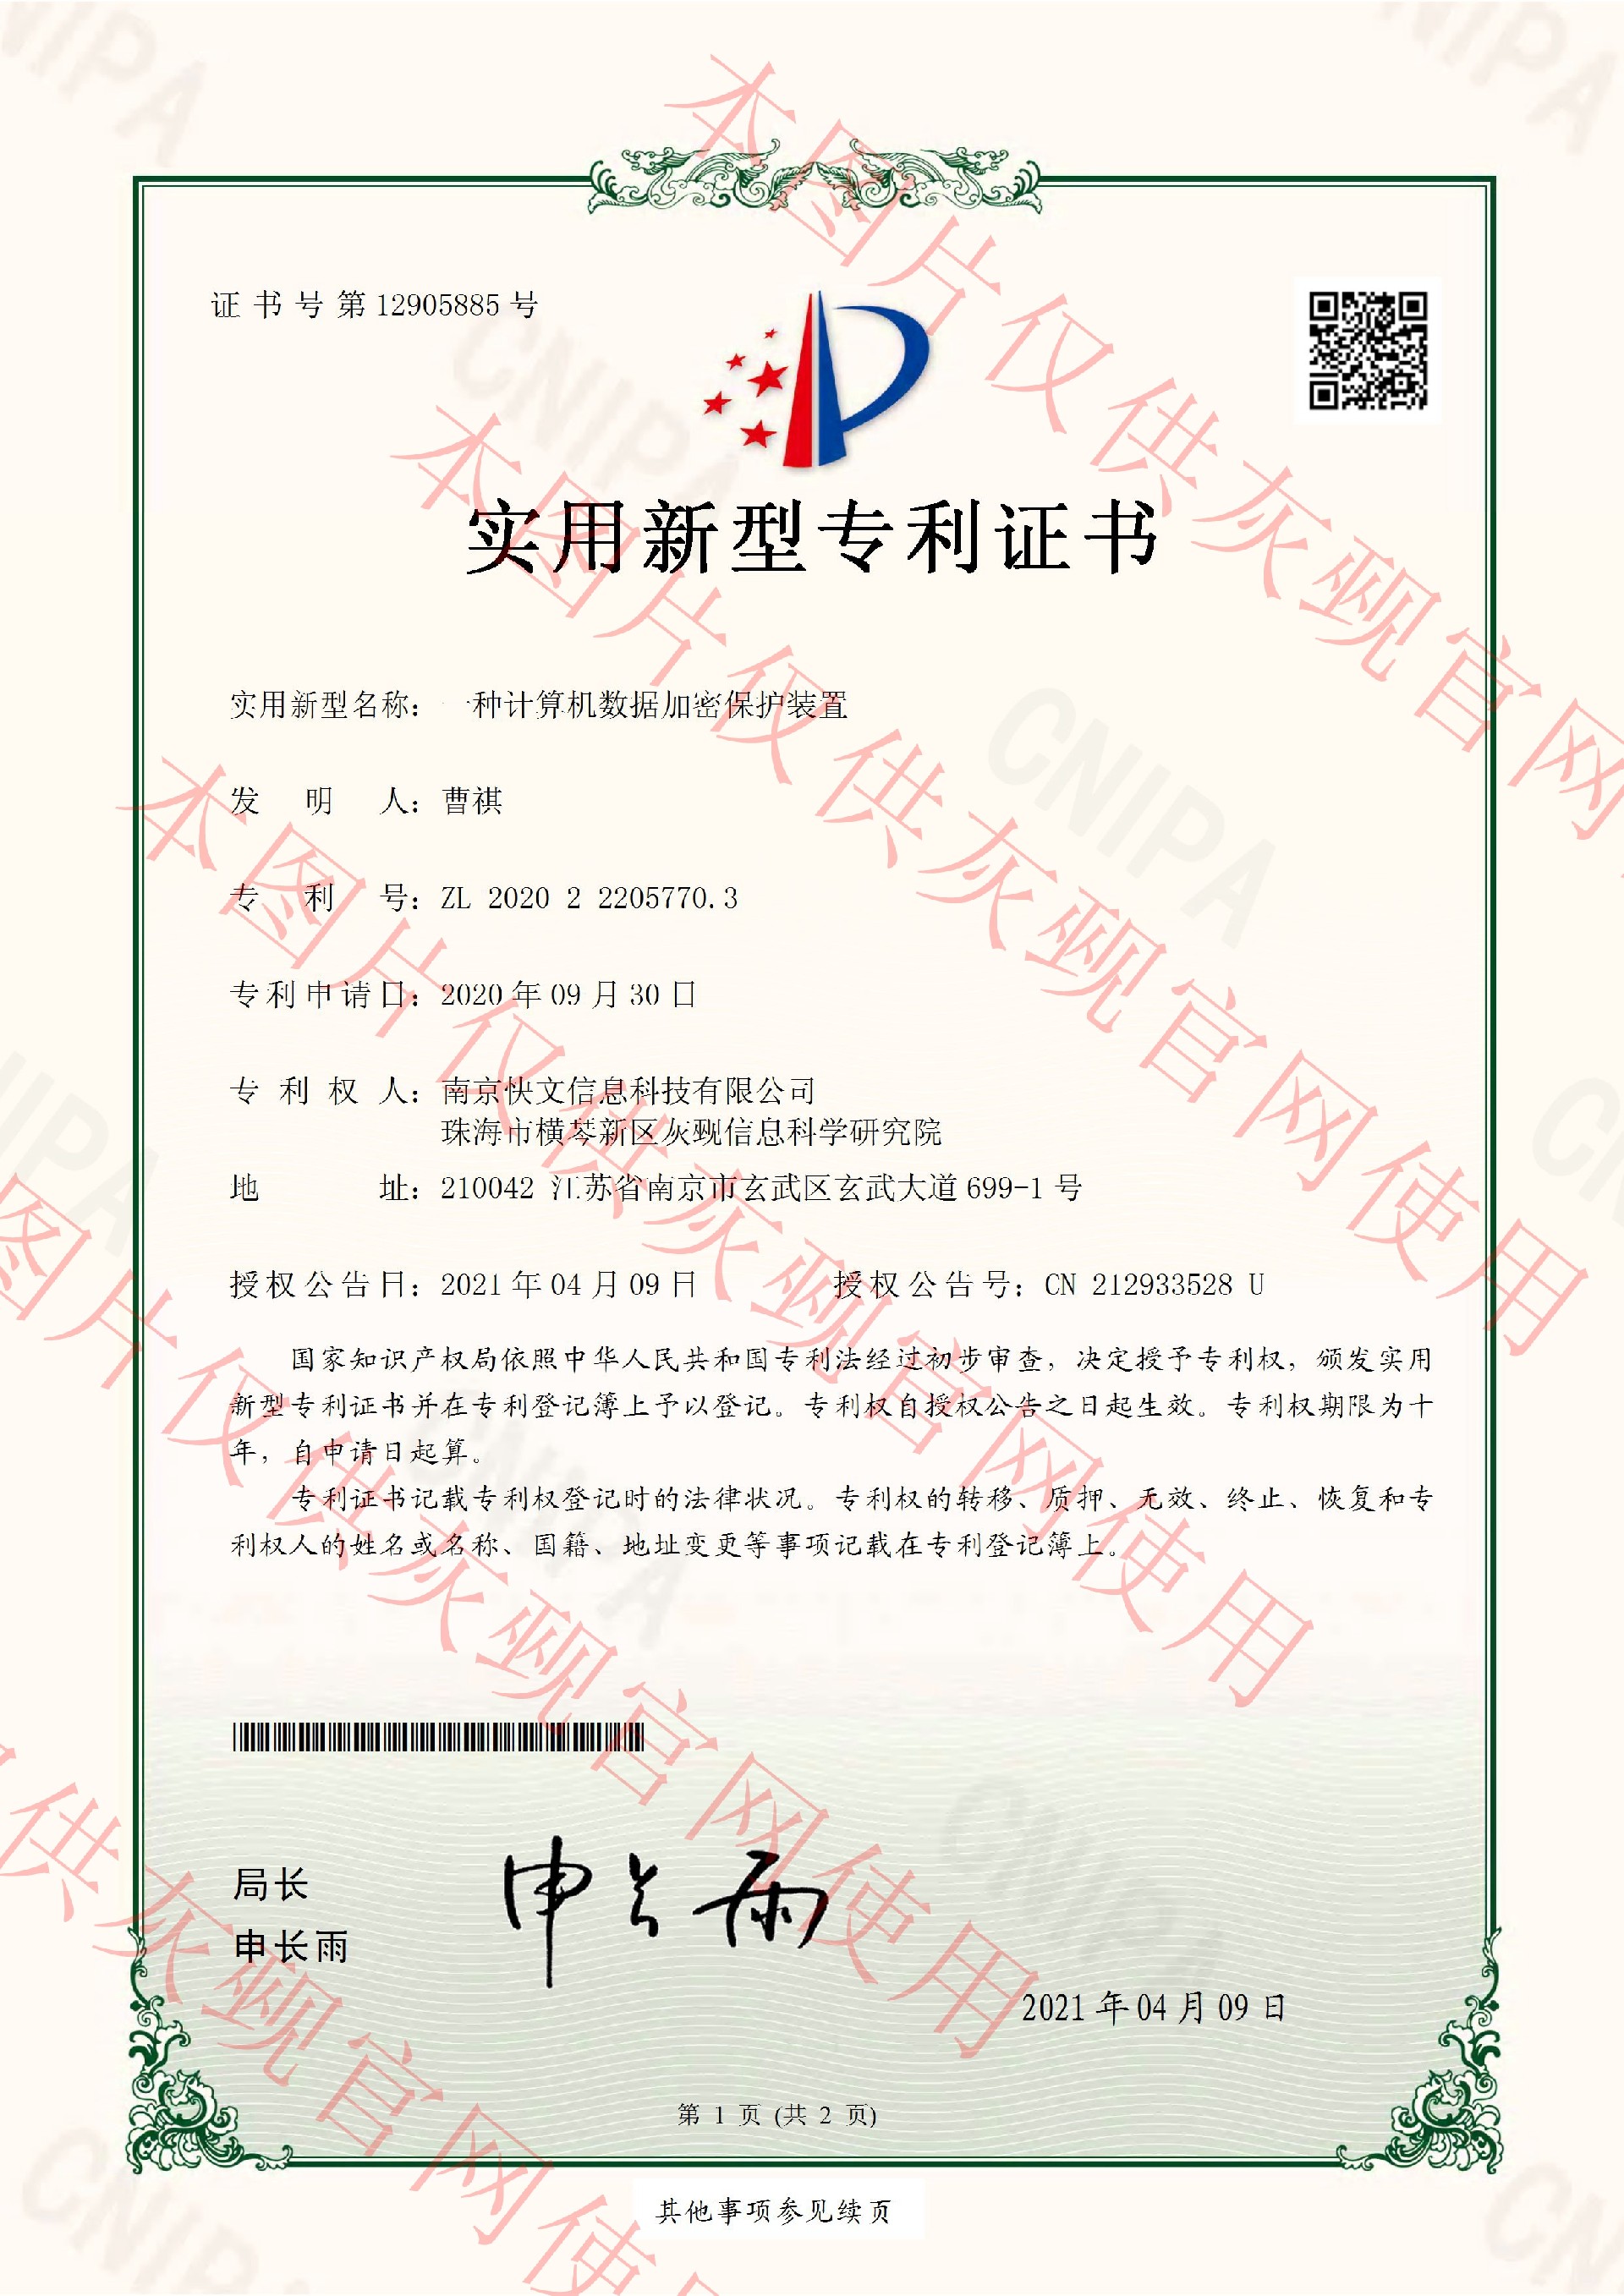 2021.4.9 一种计算机数据加密保护装置-实用新型专利证书-南京快文信息科技有限公司_页面_1.jpg